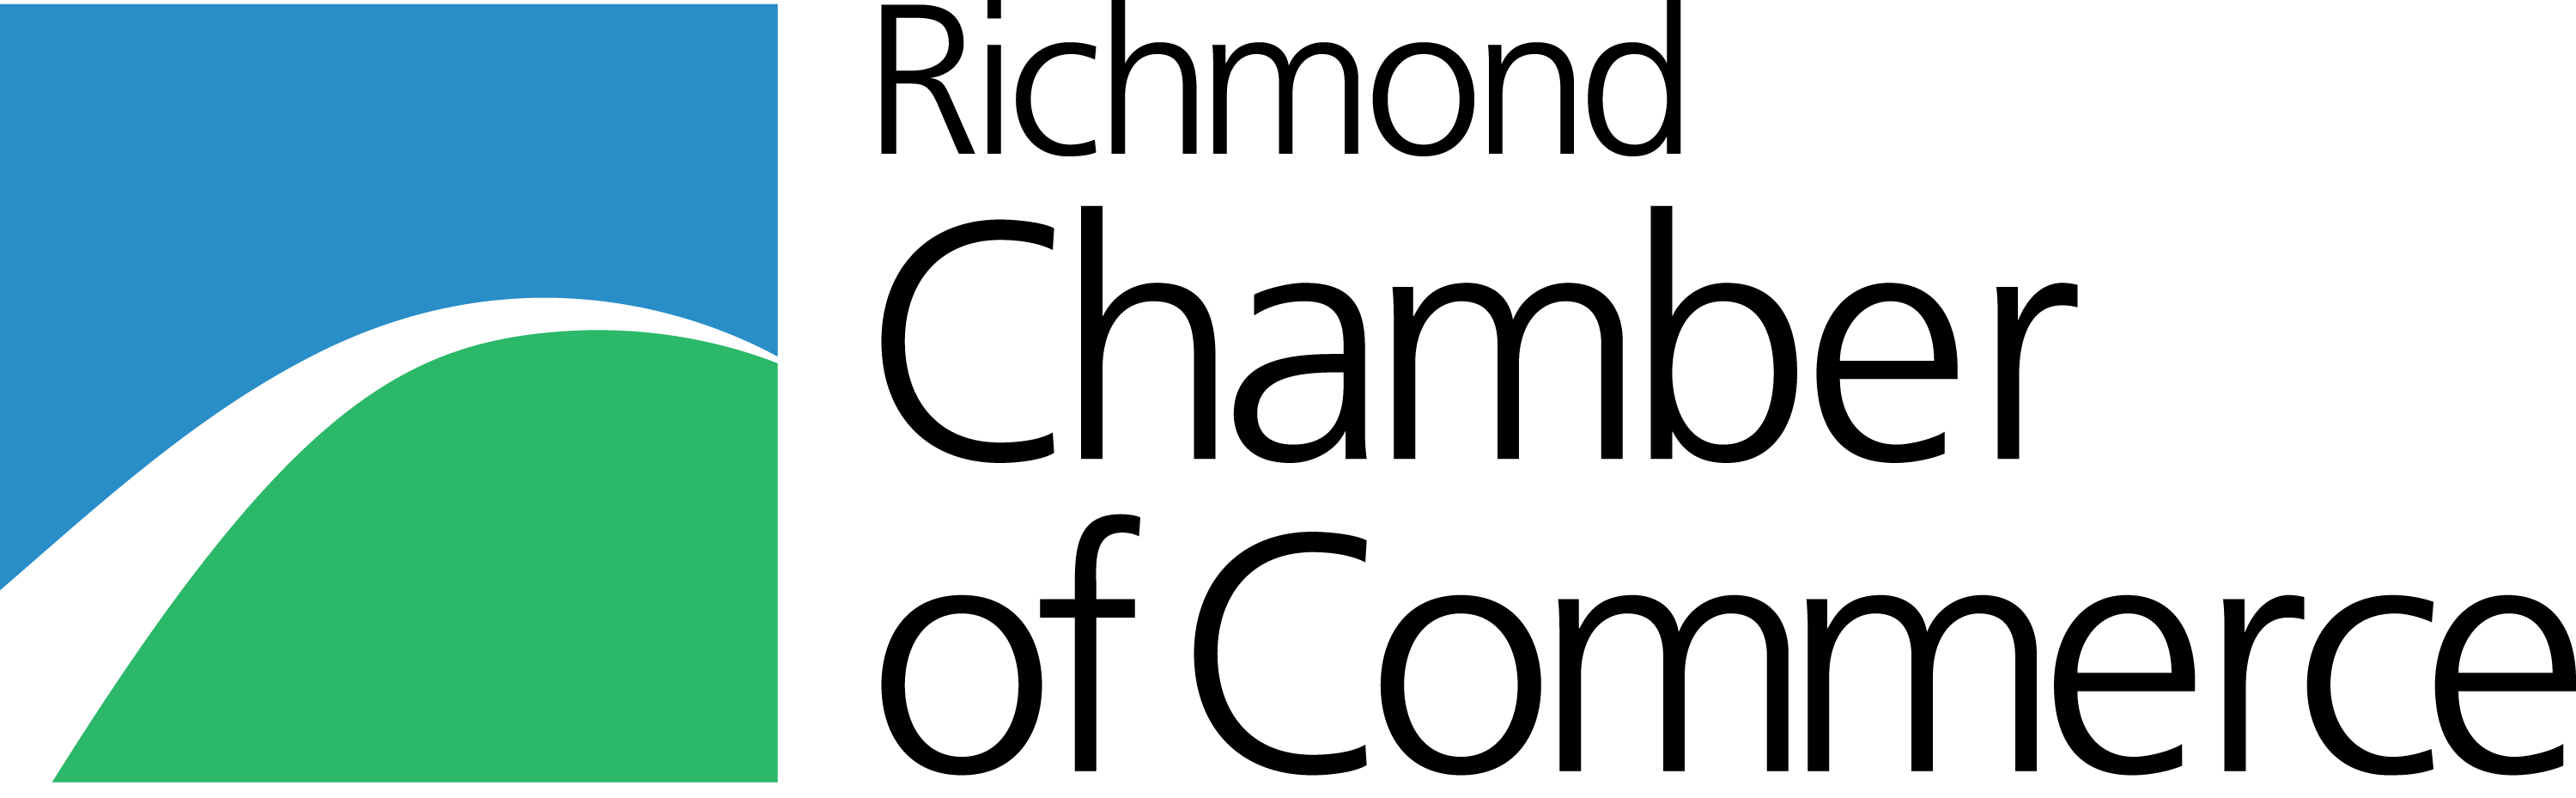 另開視窗，連結到加拿大里奇蒙商會 (Richmond Chamber of Commerce)